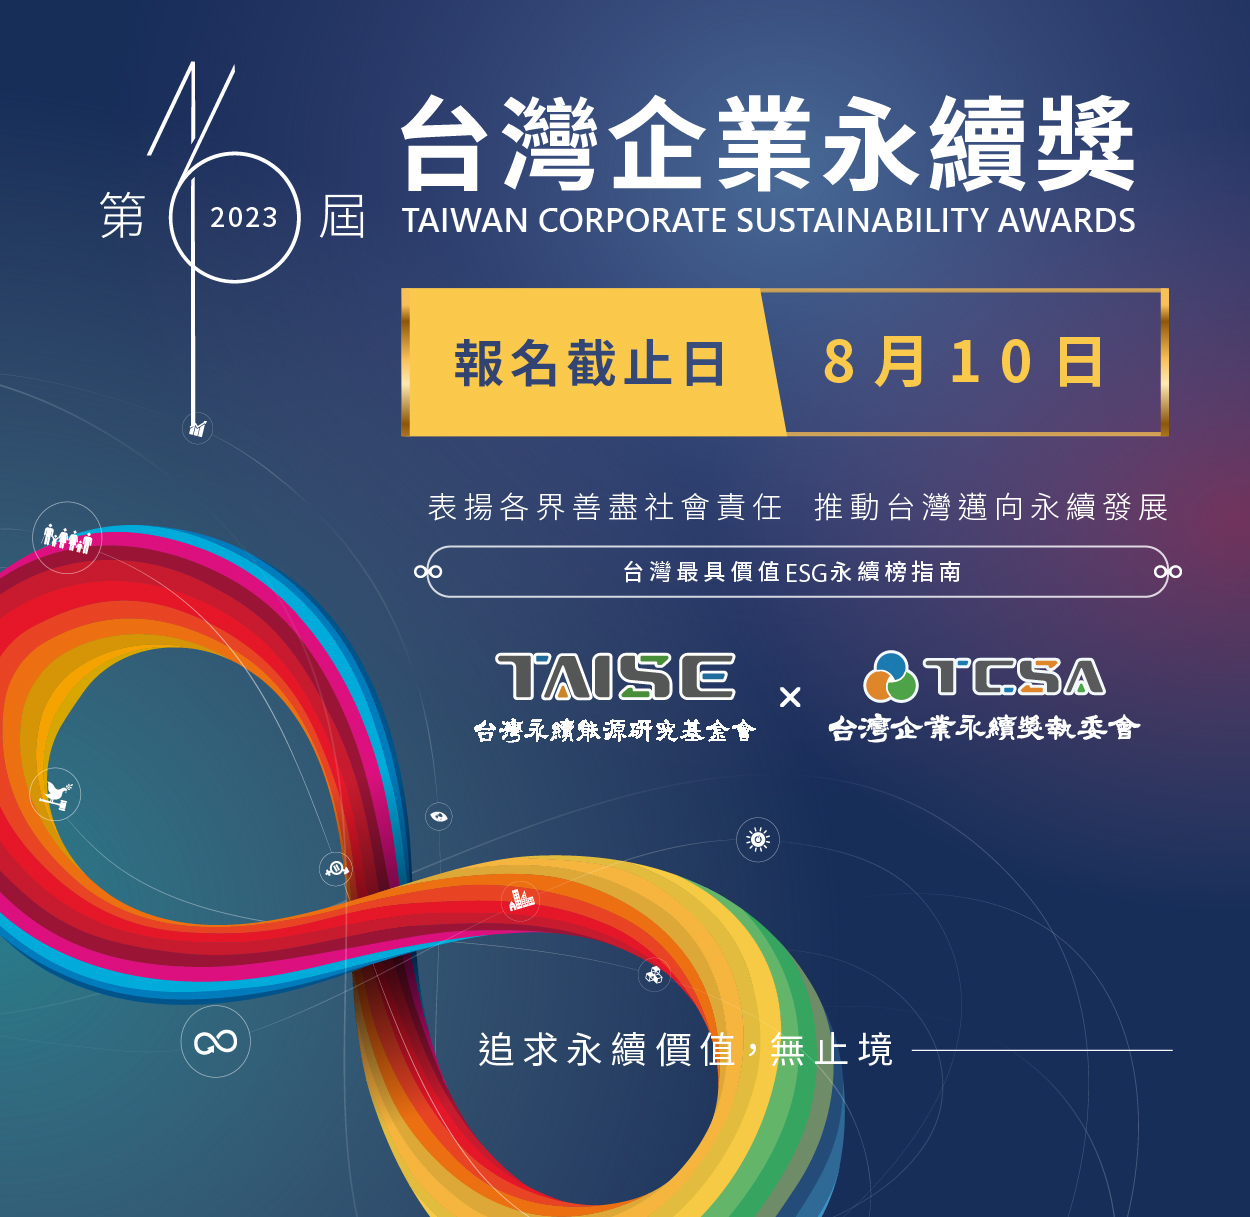 2023年 第16屆 TCSA台灣企業永續獎 開放報名  